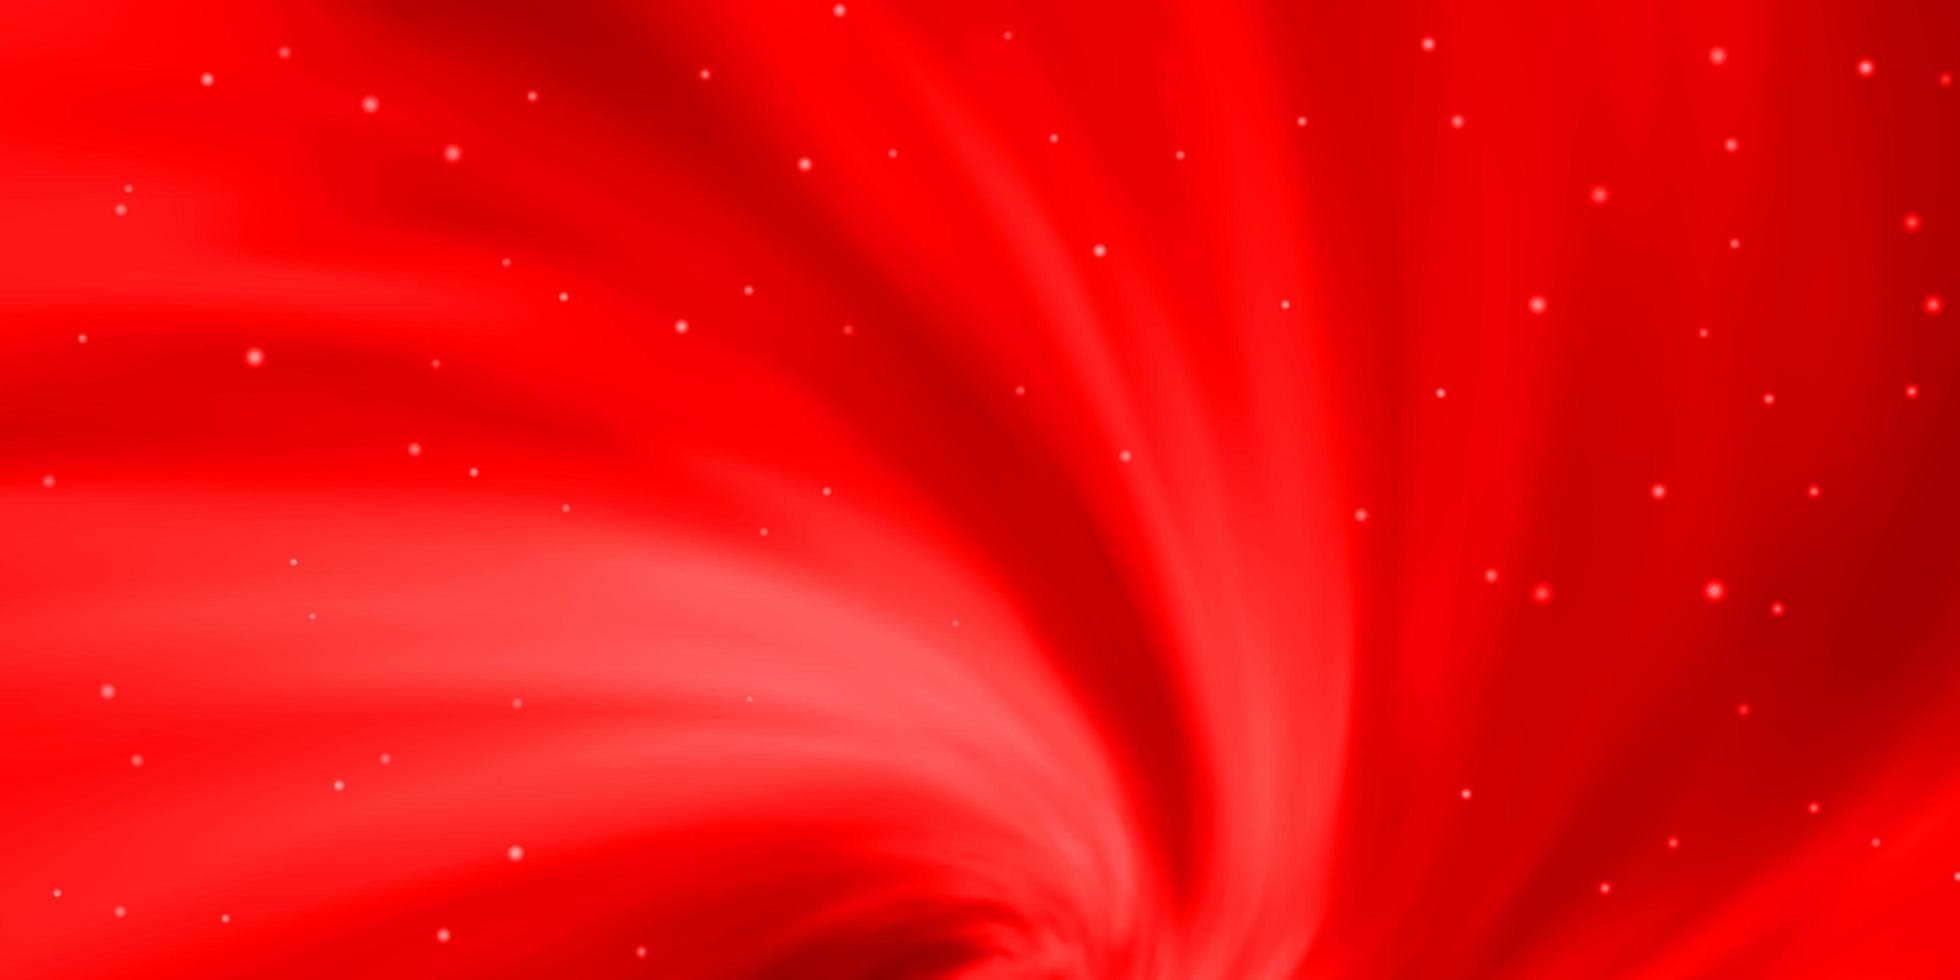 plantilla de vector rojo claro con estrellas de neón.